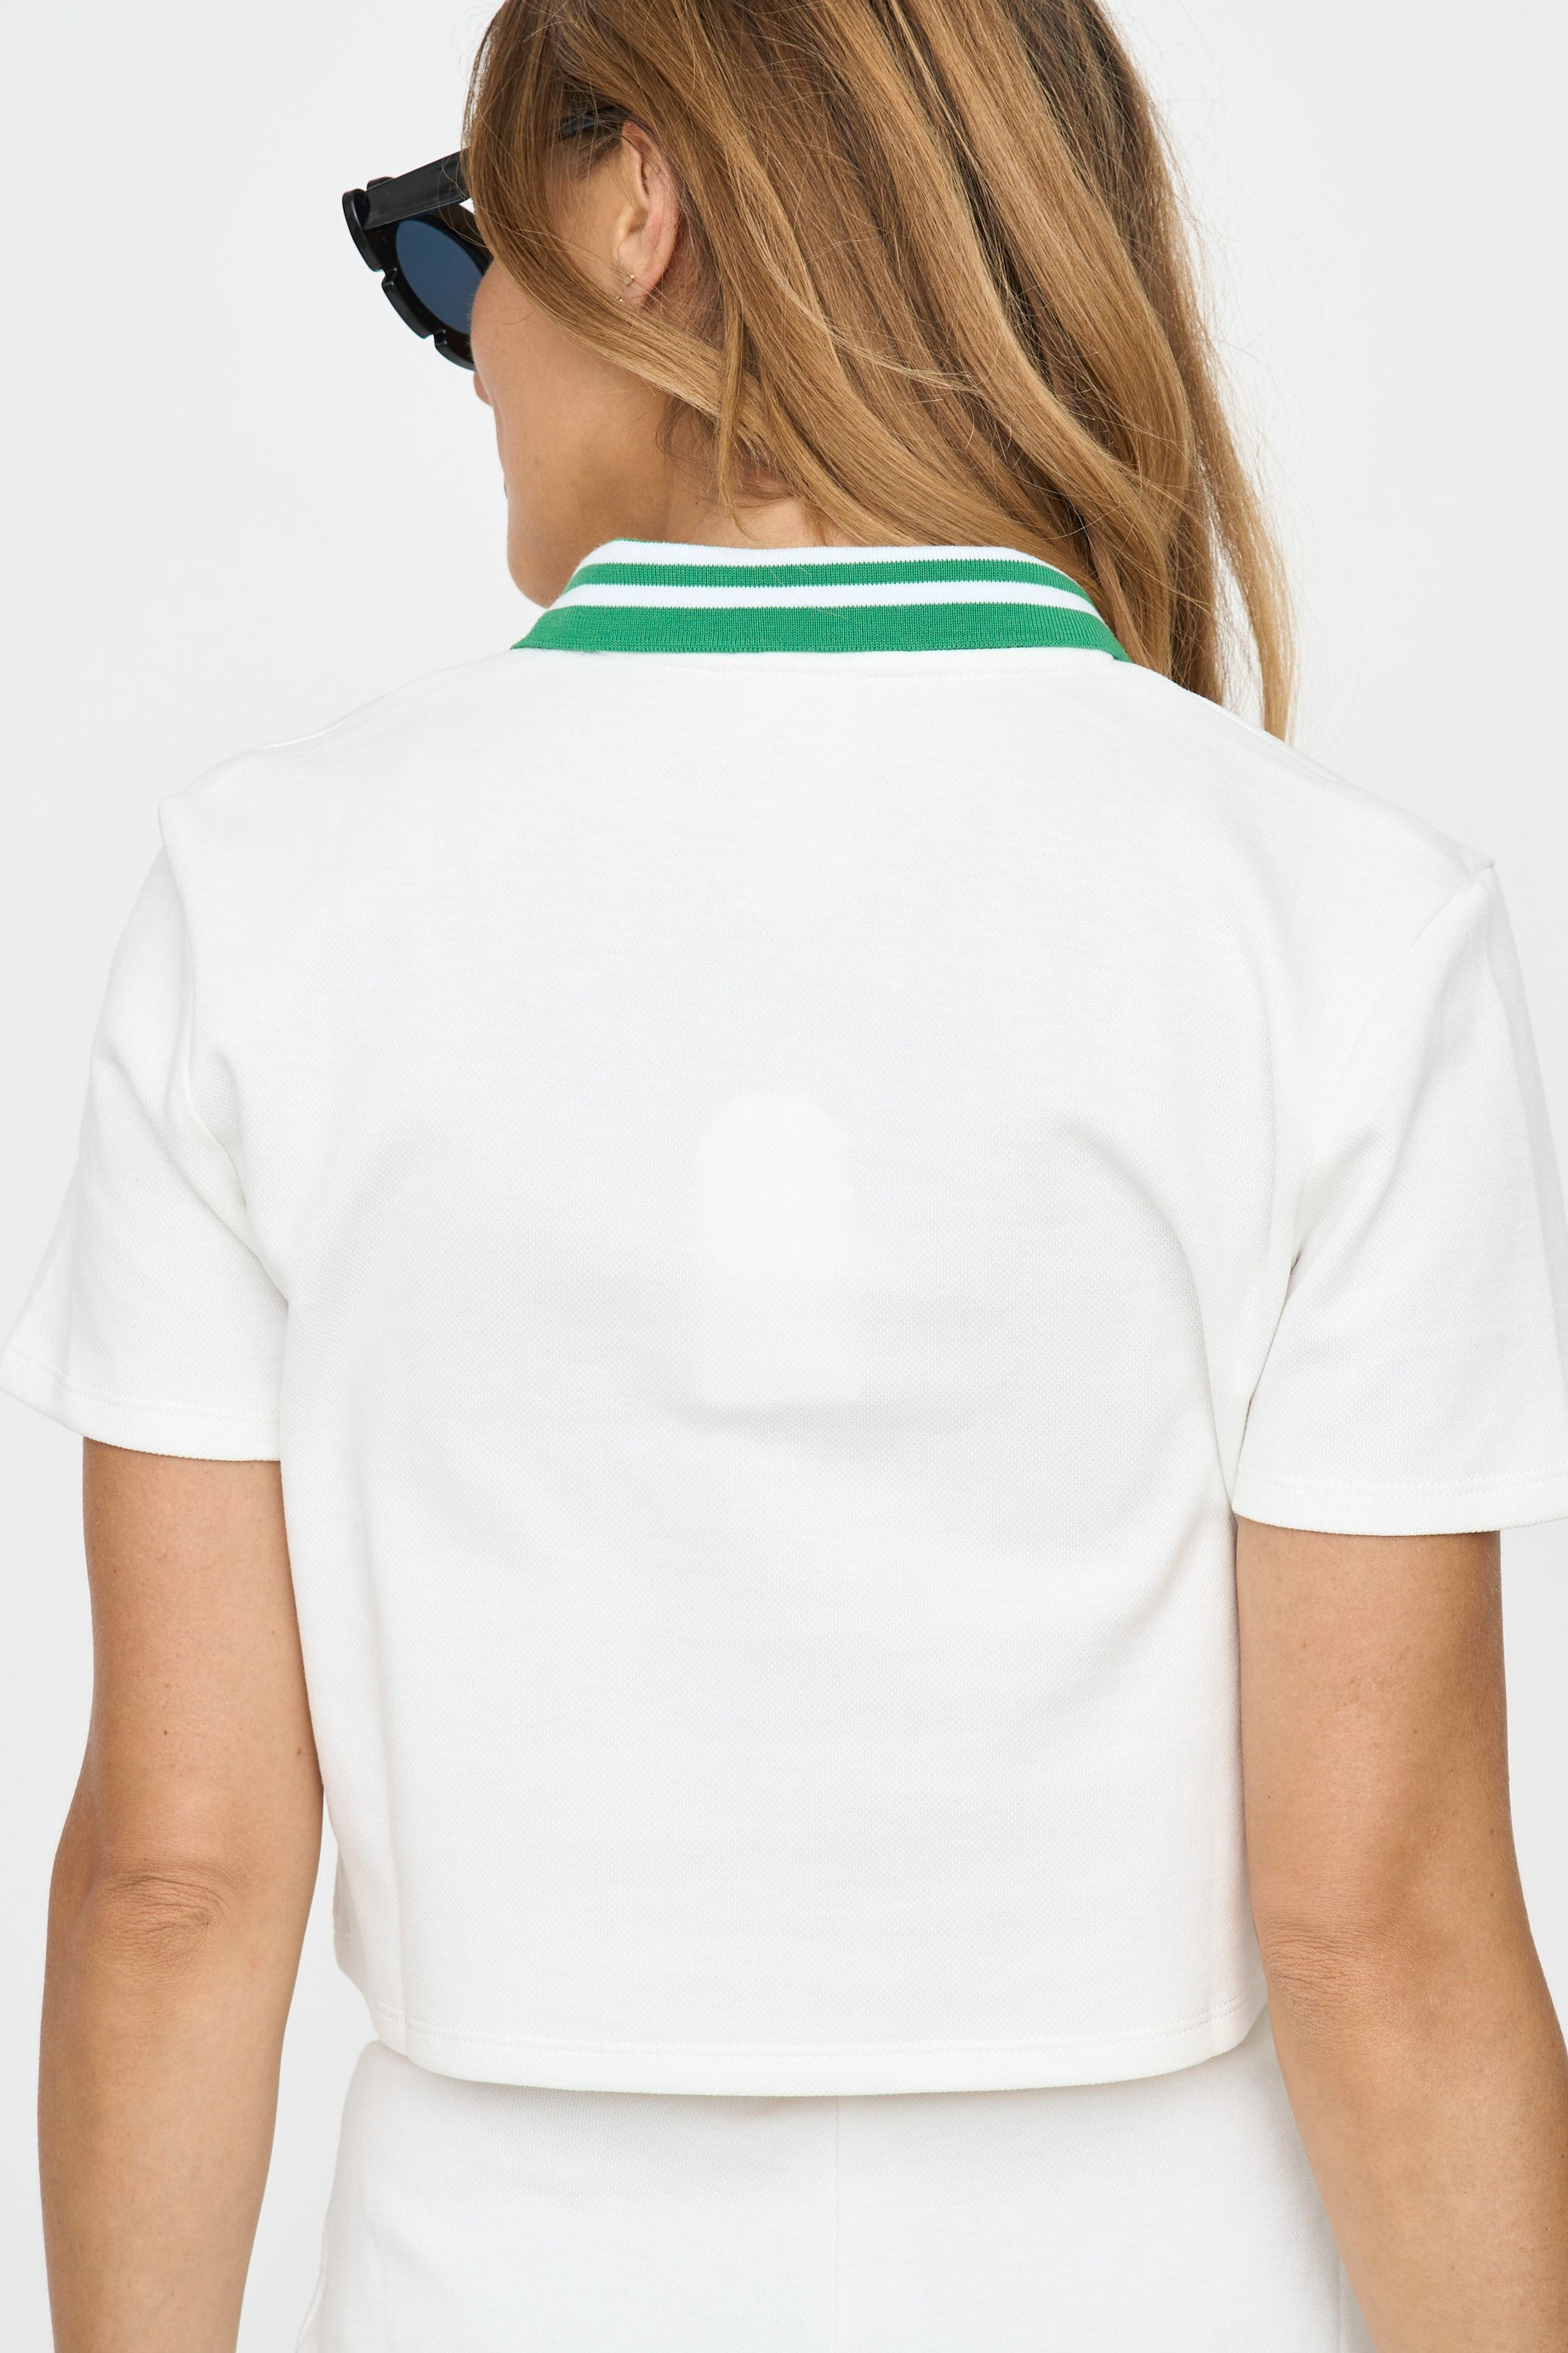 Tennis Girl Crop Polo Shirt